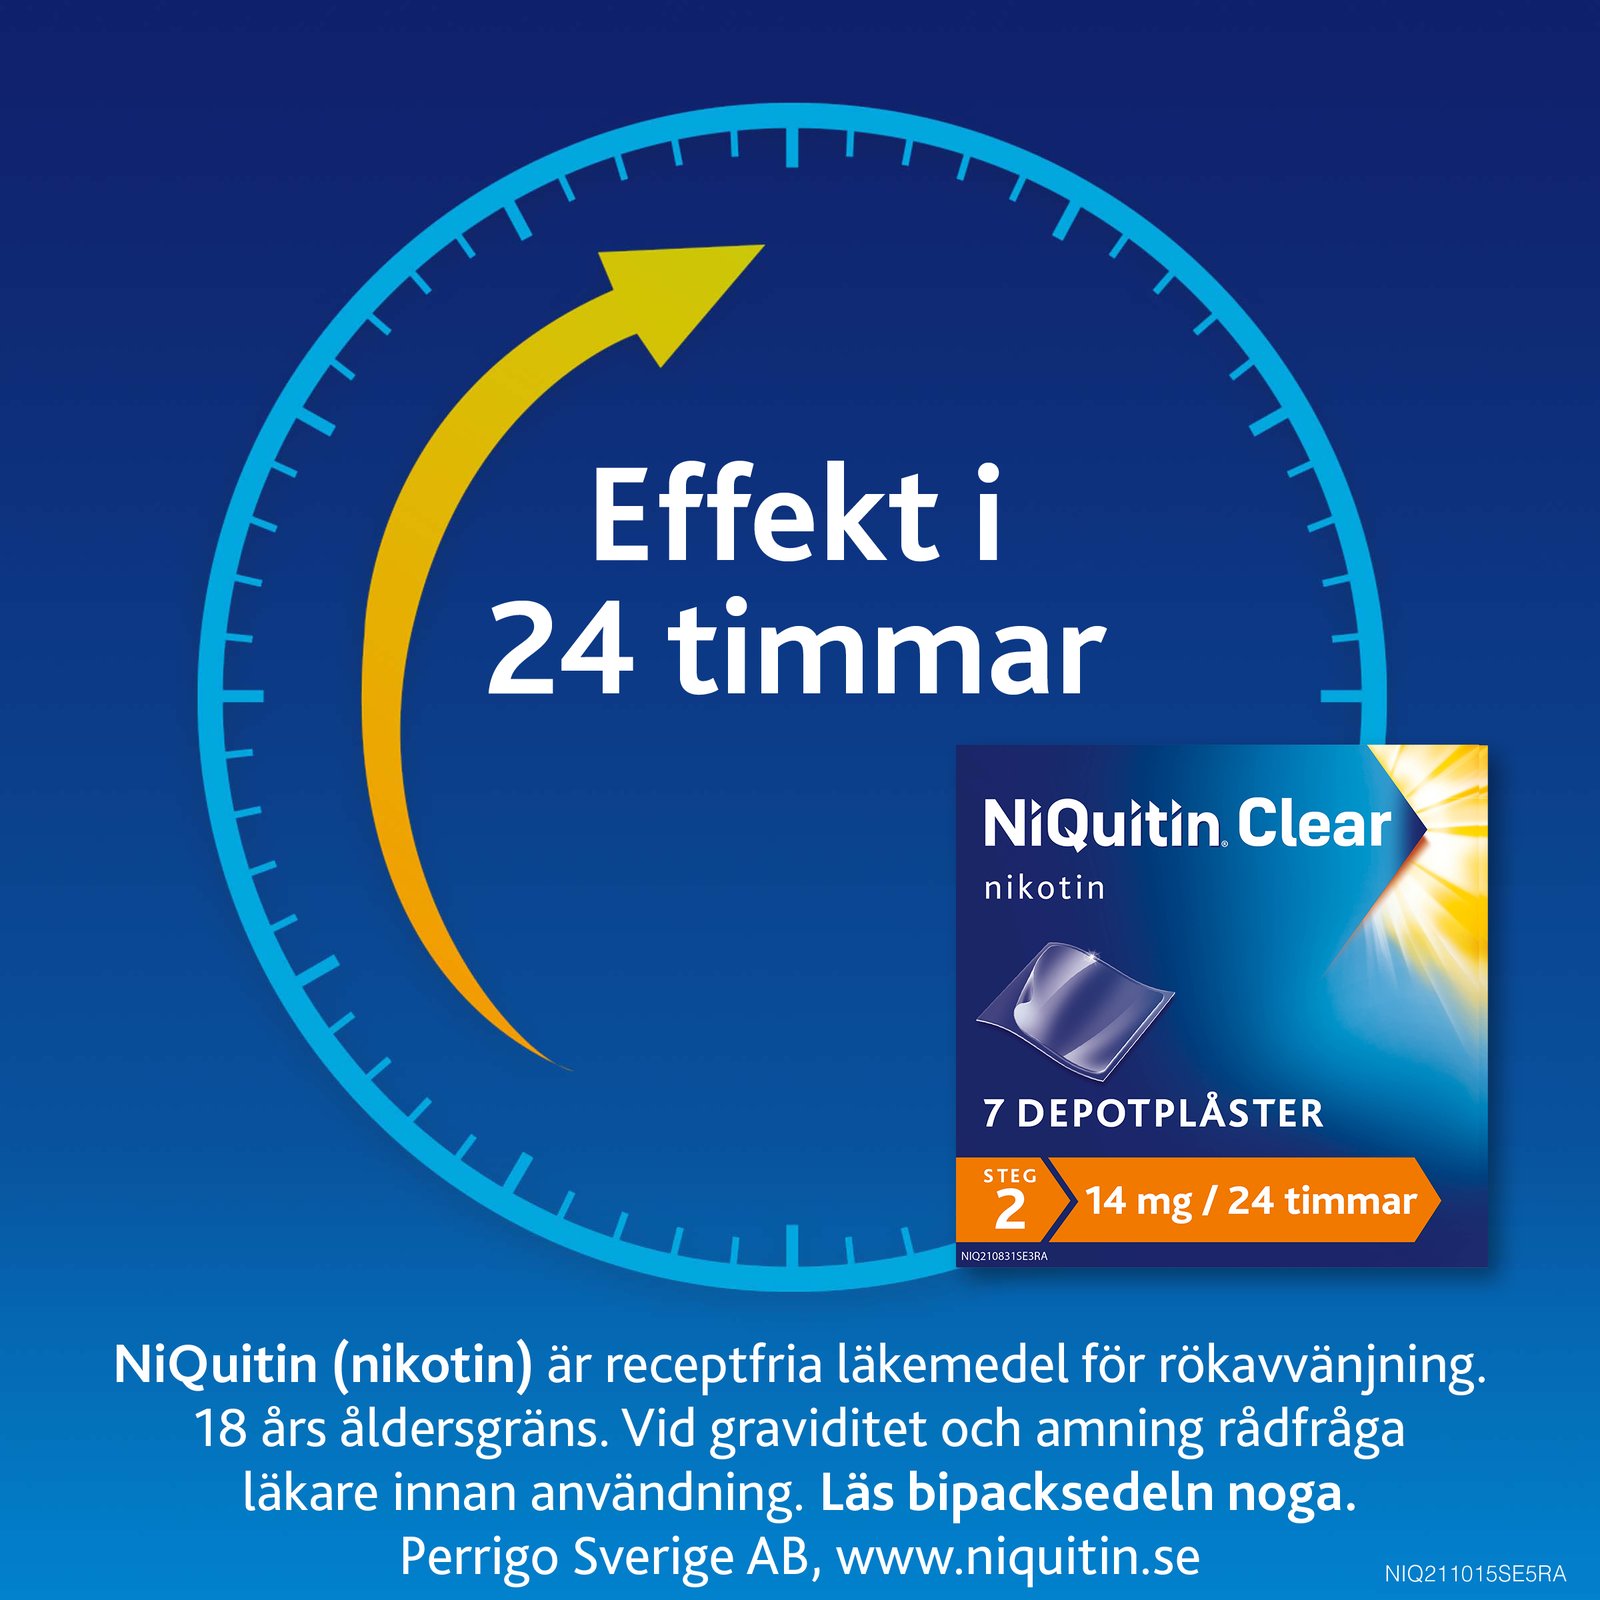 Niquitin Clear 14 mg /24 timmar Depotplåster Nikotinplåster 7 st